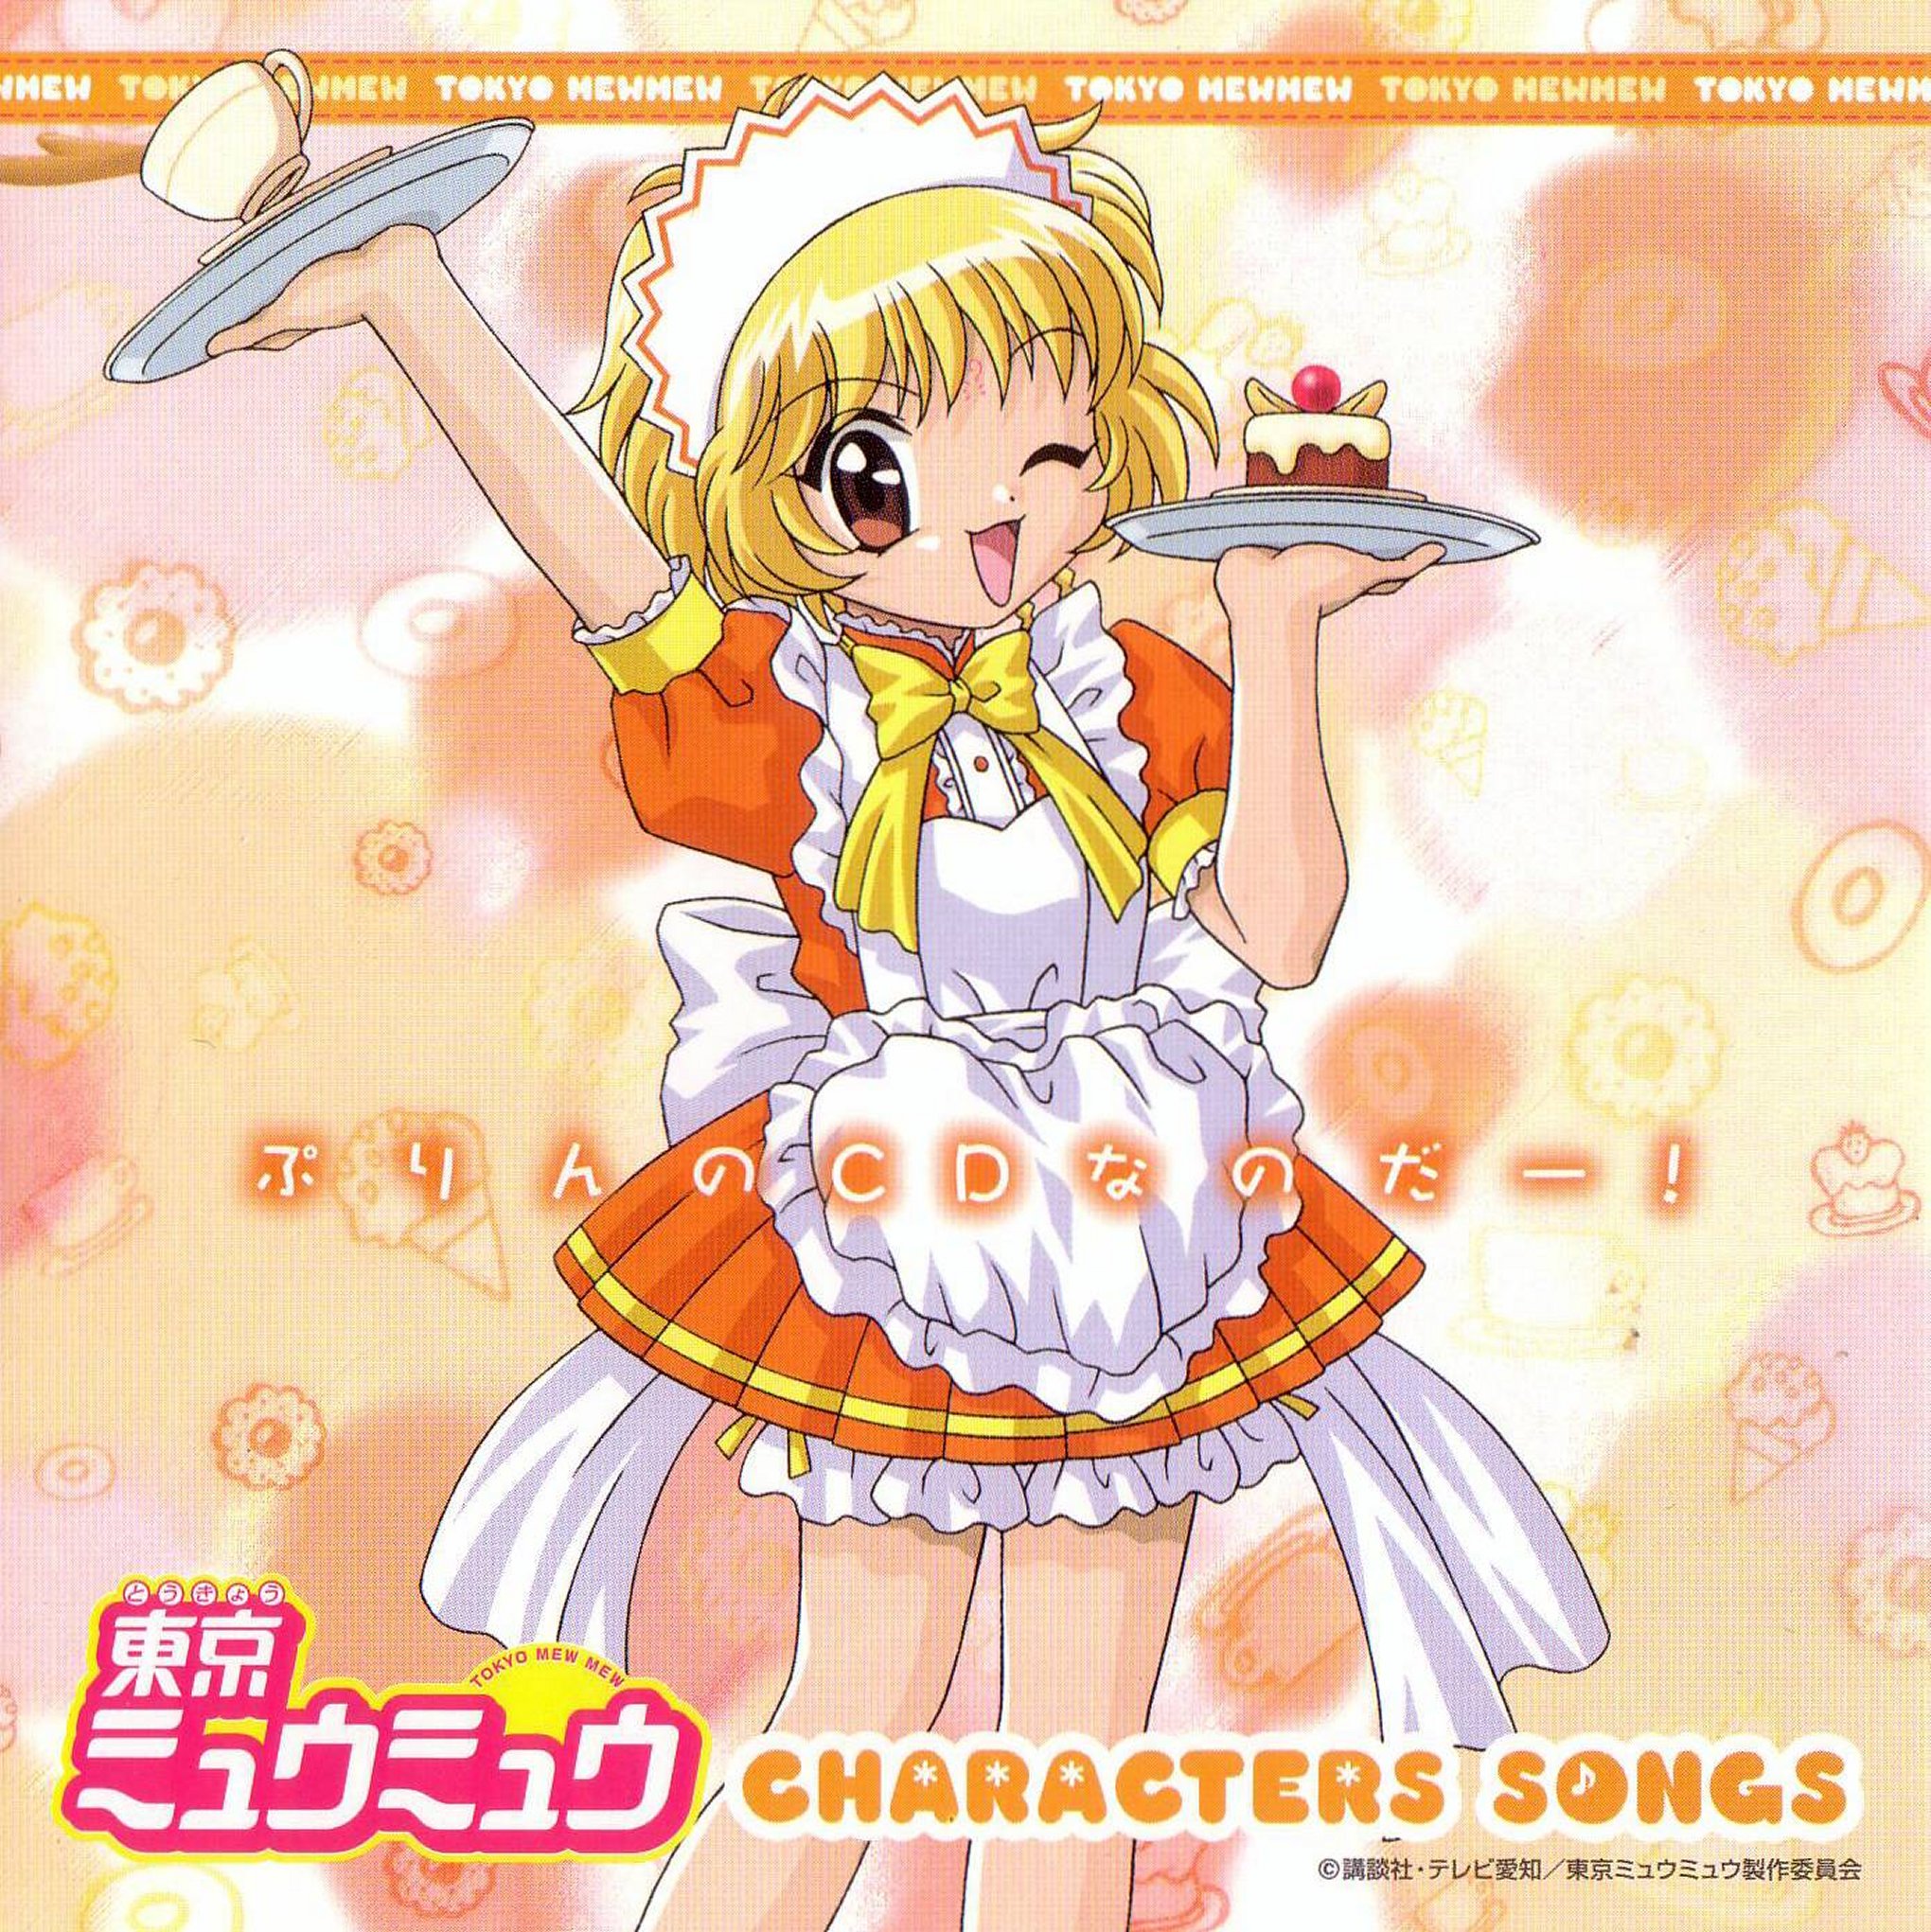 Pudding no CD na no da!, Tokyo Mew Mew Wiki